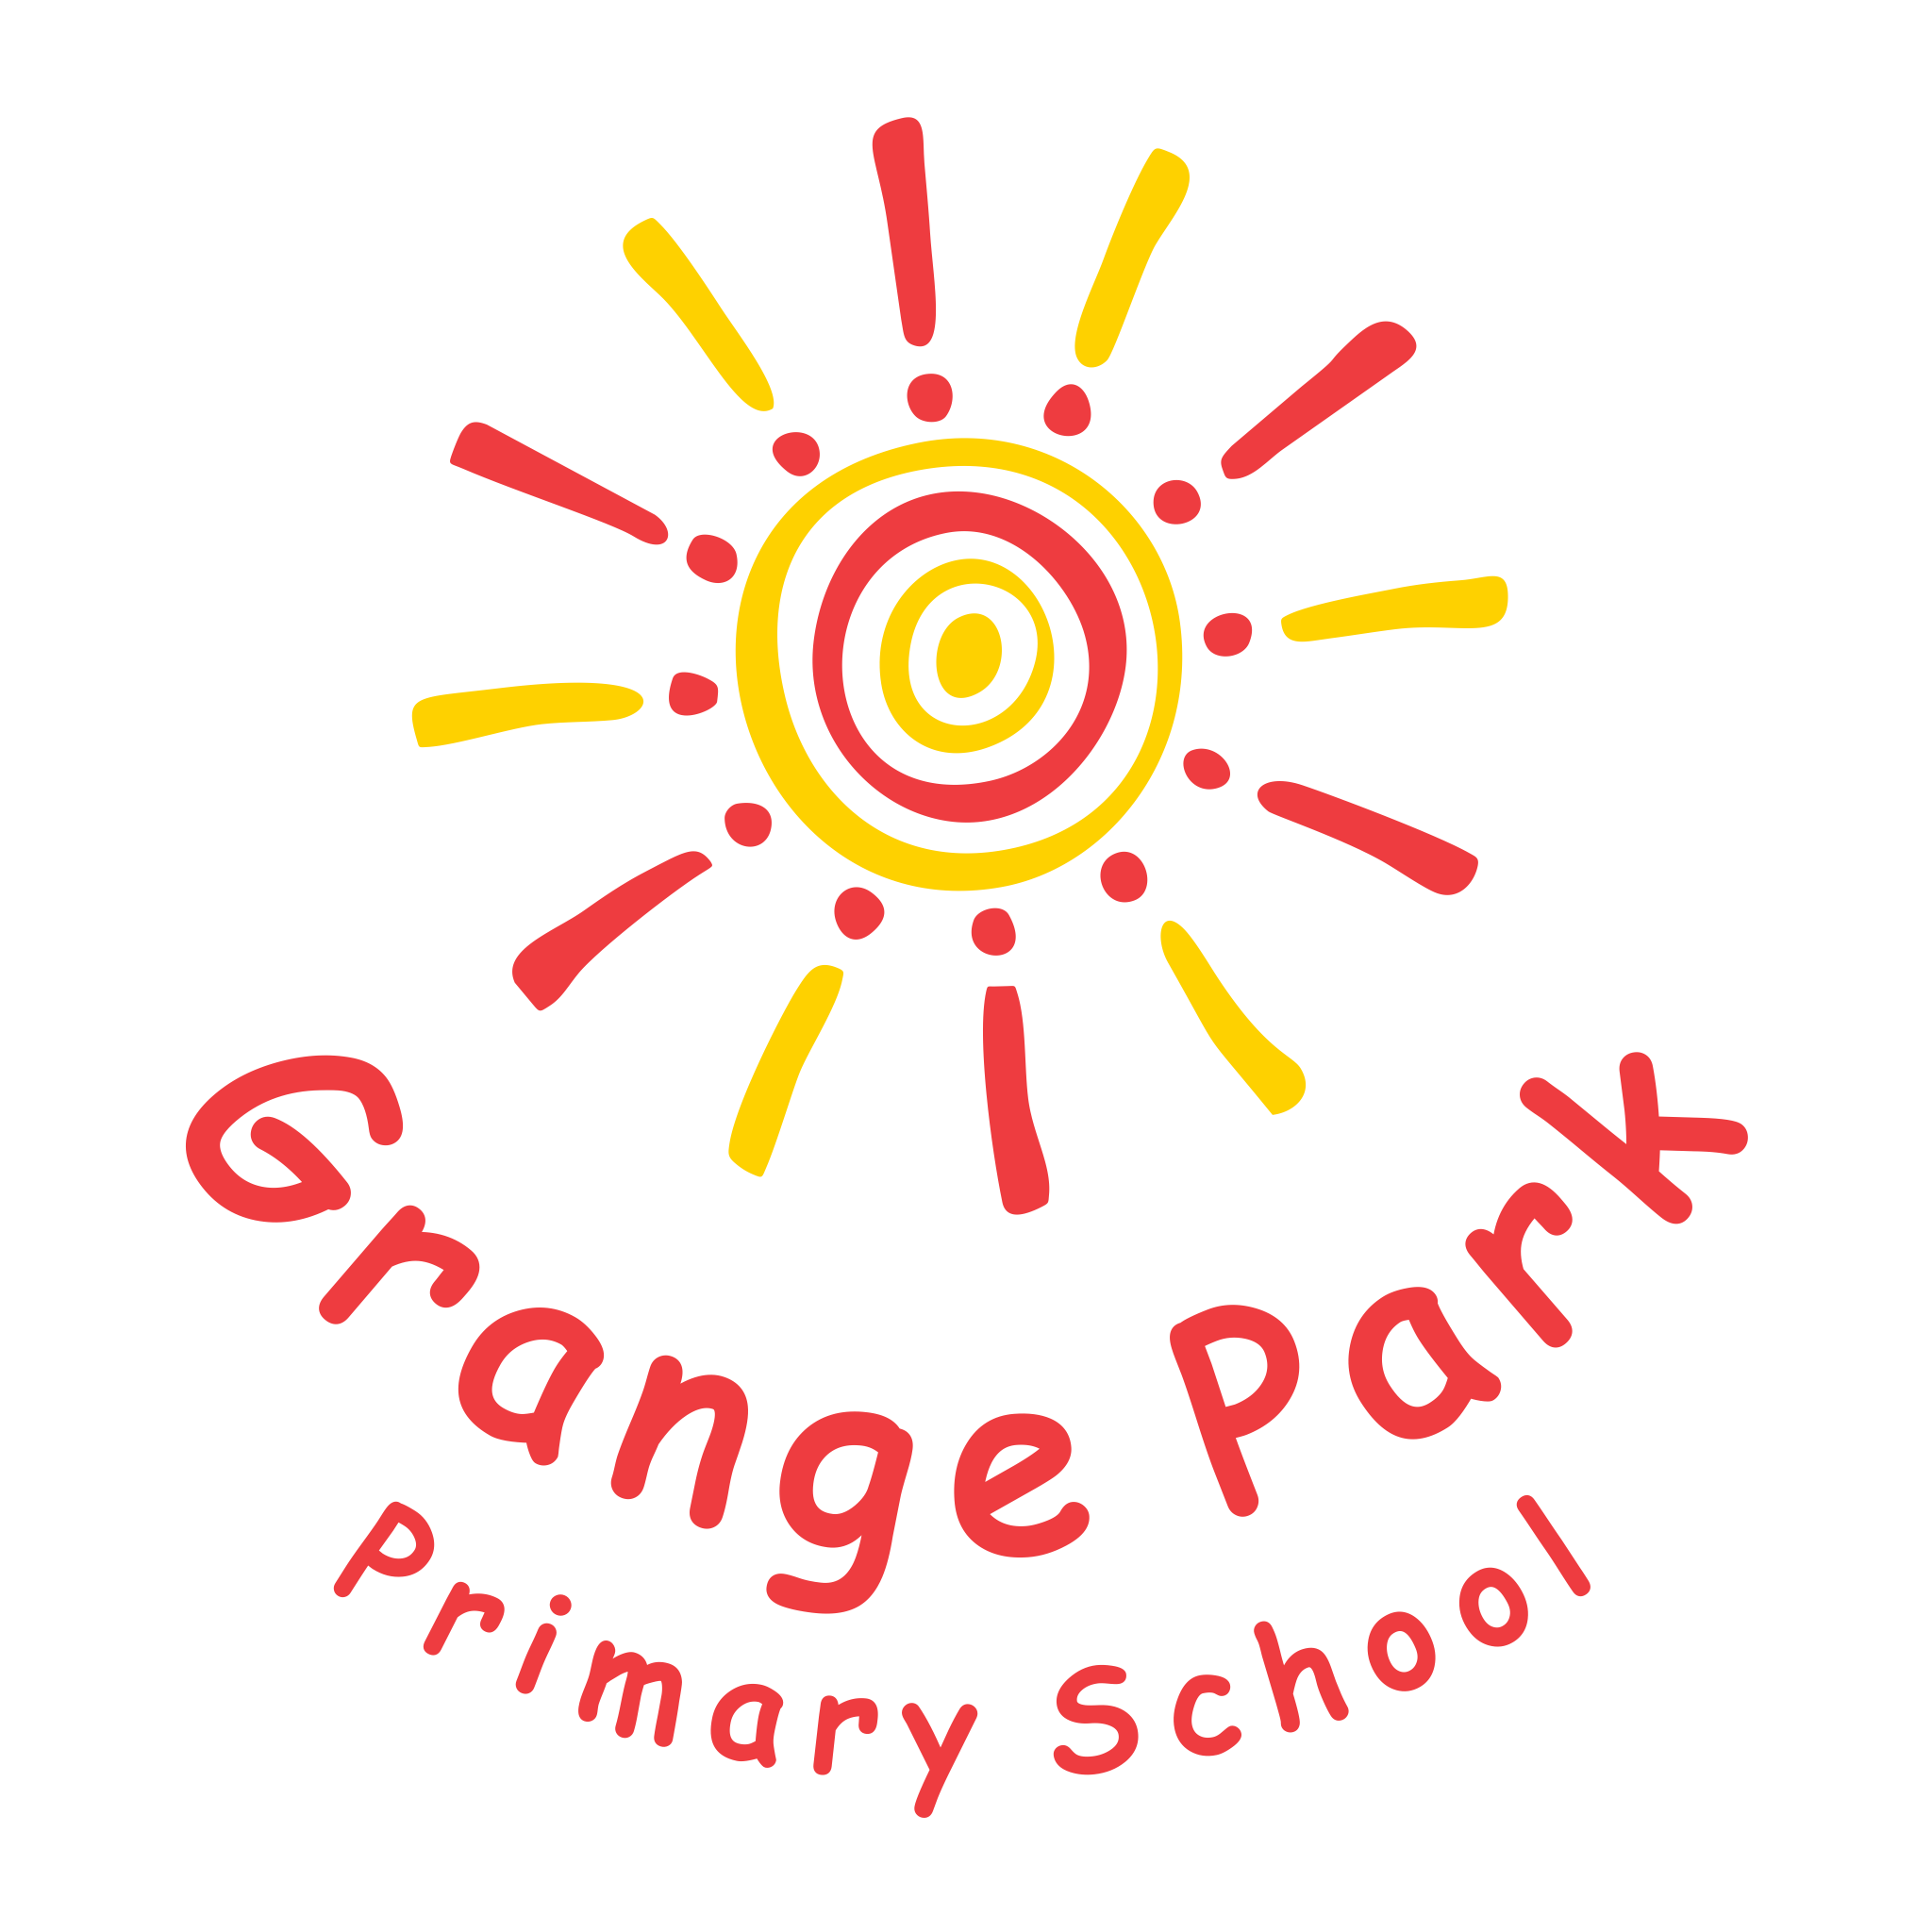 Grange Park Primary School